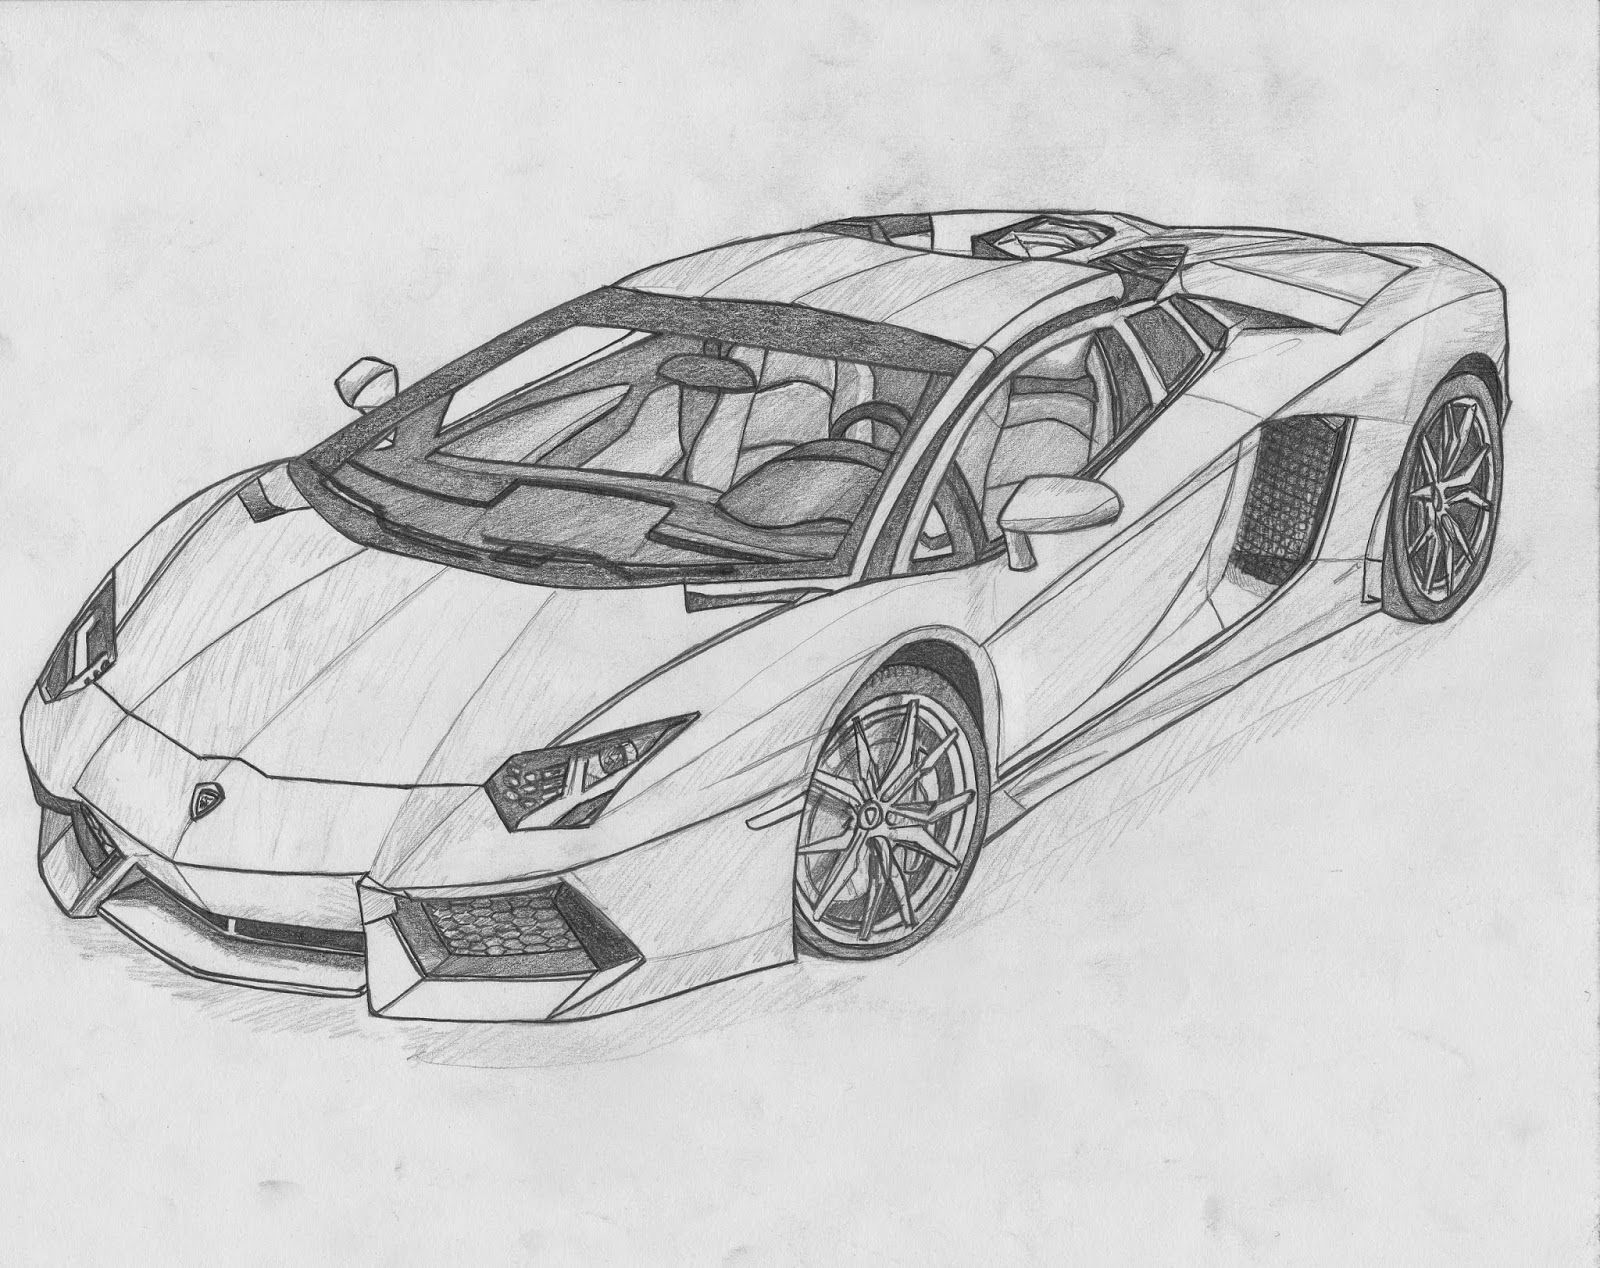 Tìm hiểu về tranh vẽ ô tô mơ ước Lamborghini độc đáo và đẹp mắt